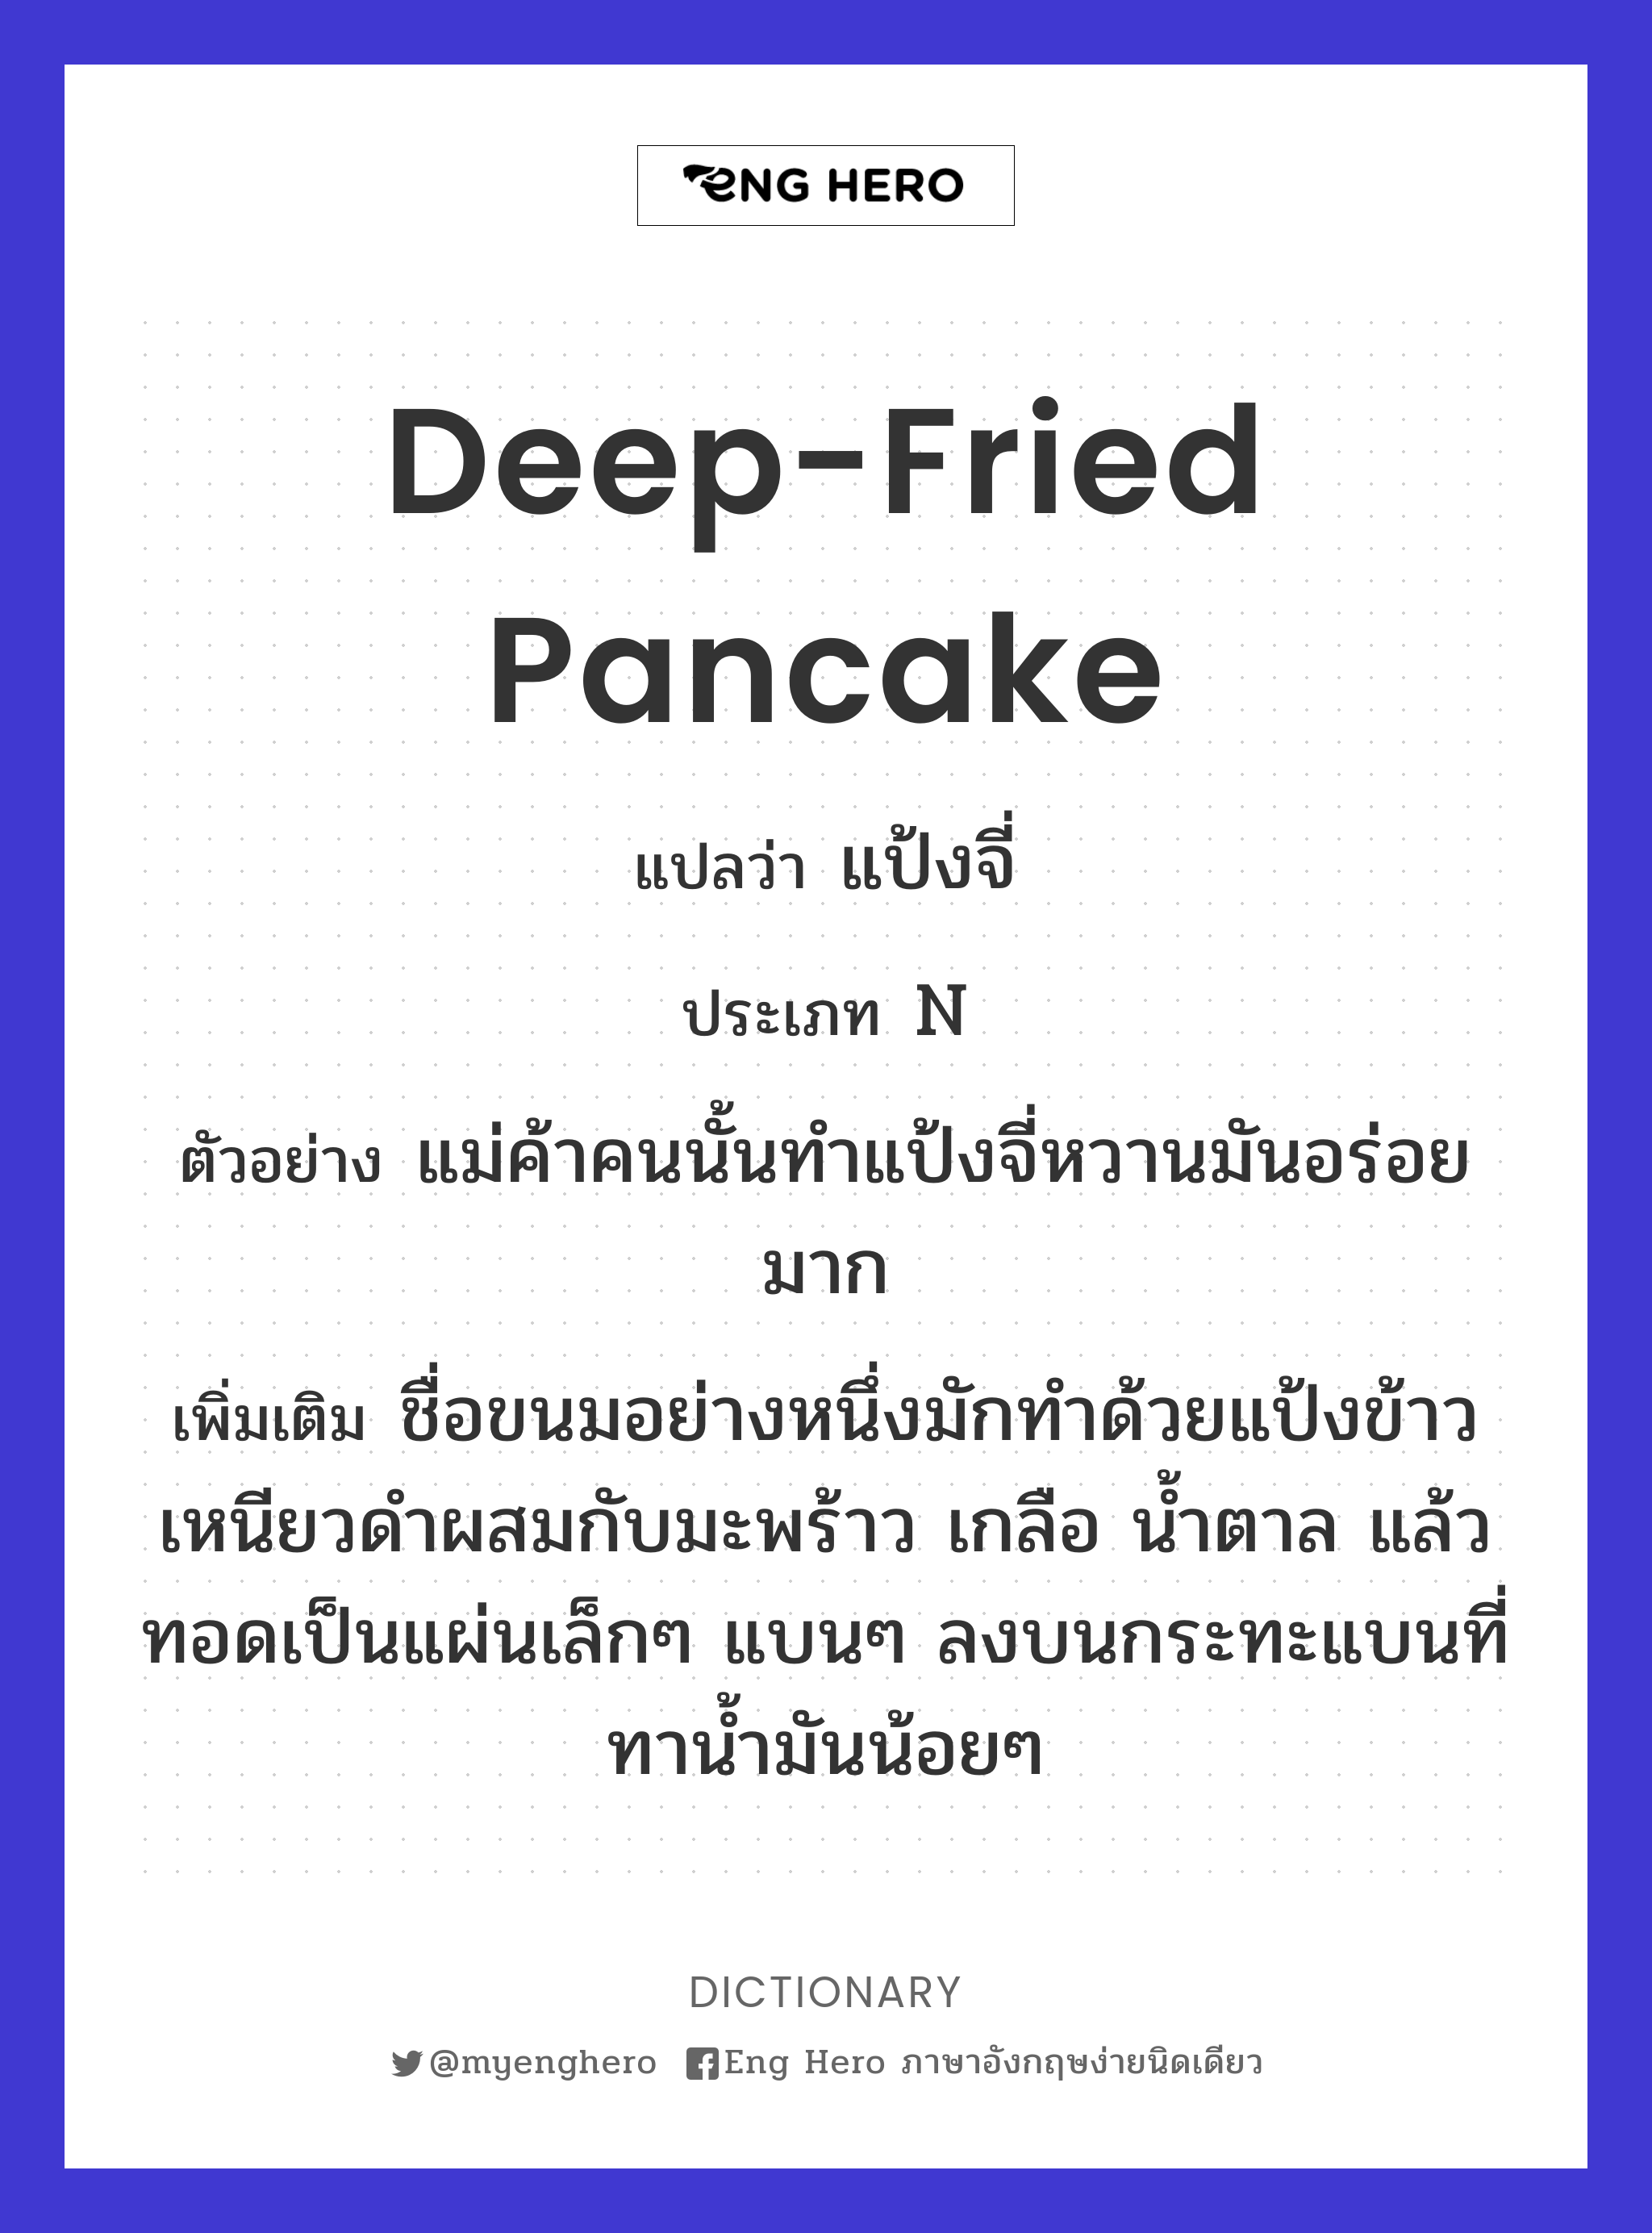 deep-fried pancake